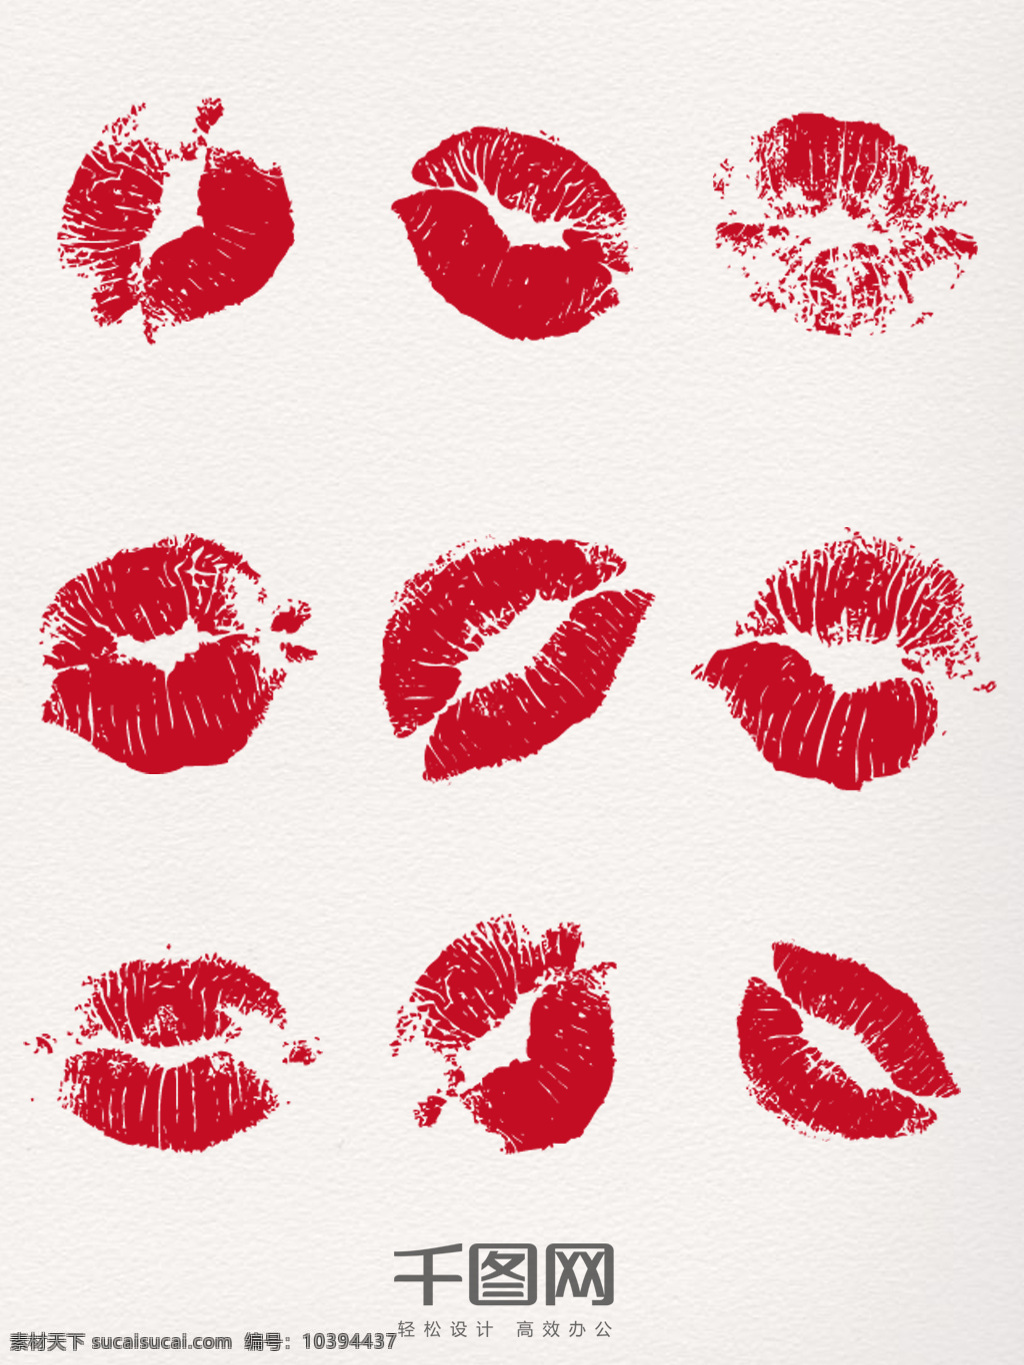 红色 唇 印 元素 装饰 图案 彩色唇印 创意唇印 唇印元素 唇印图案 唇印素材